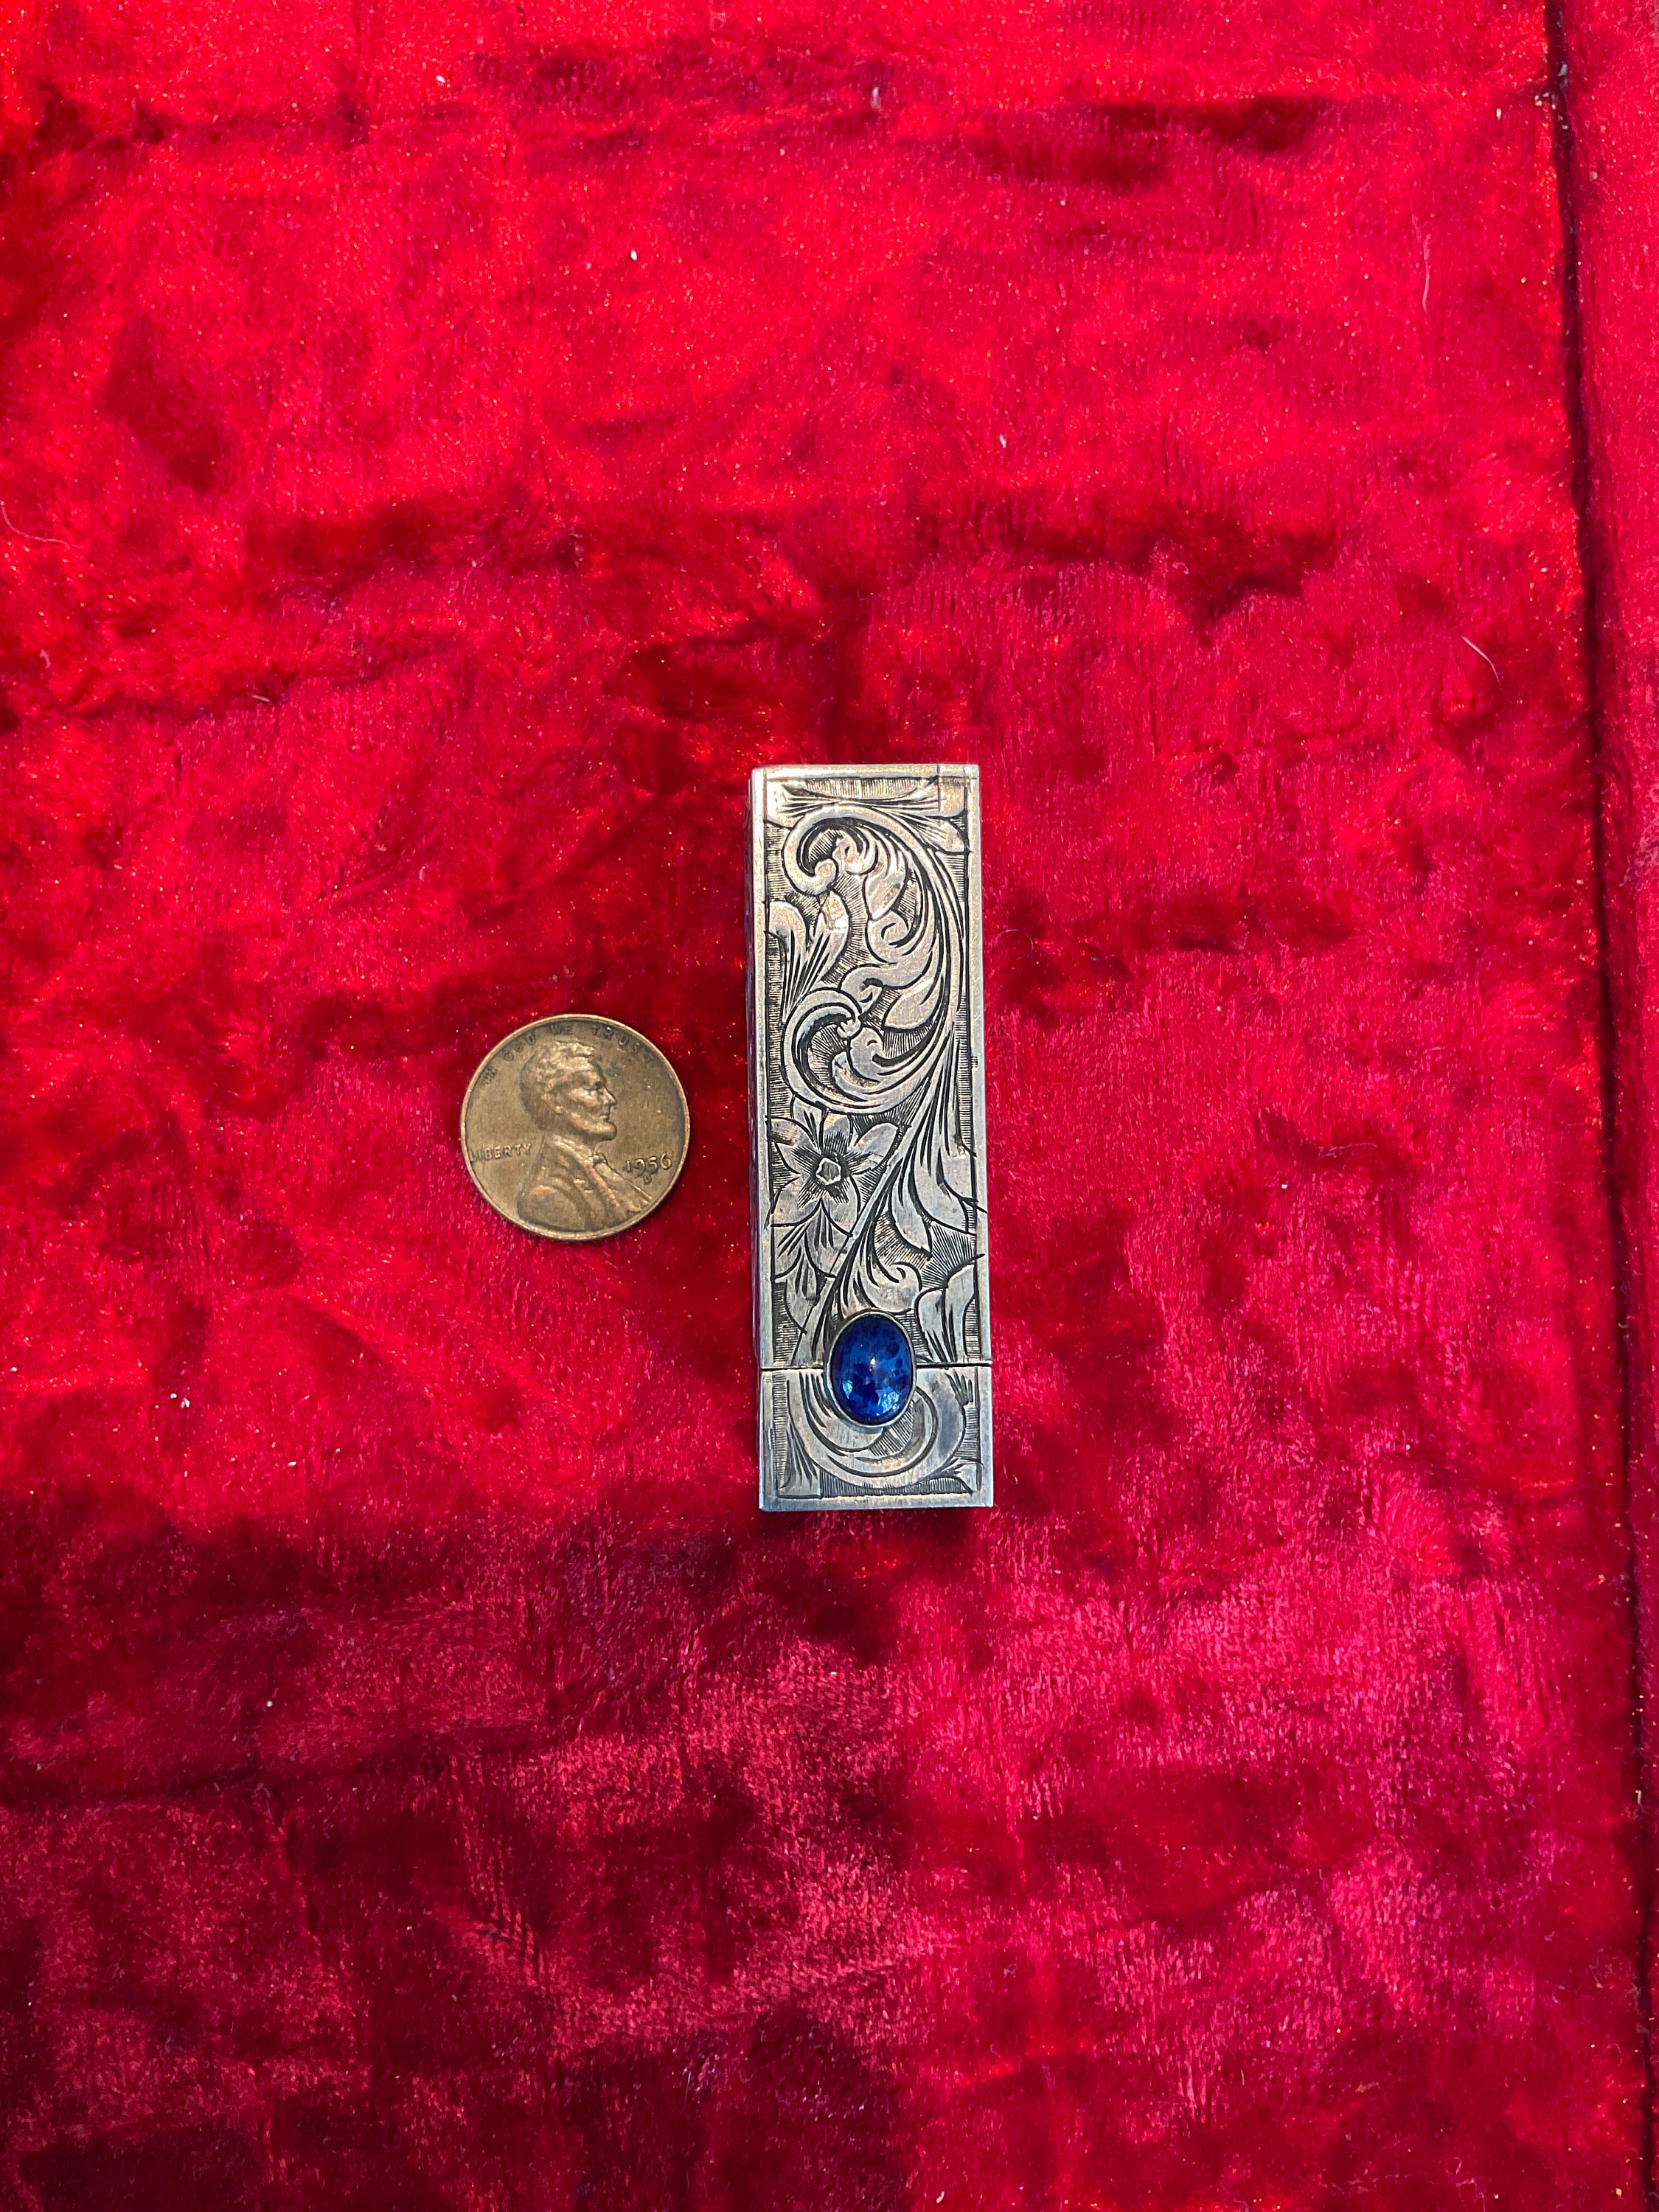 Vintage LIPSTICK HOLDER CASE 800 32g Silver Floral Etched Cobalt Blue Stone